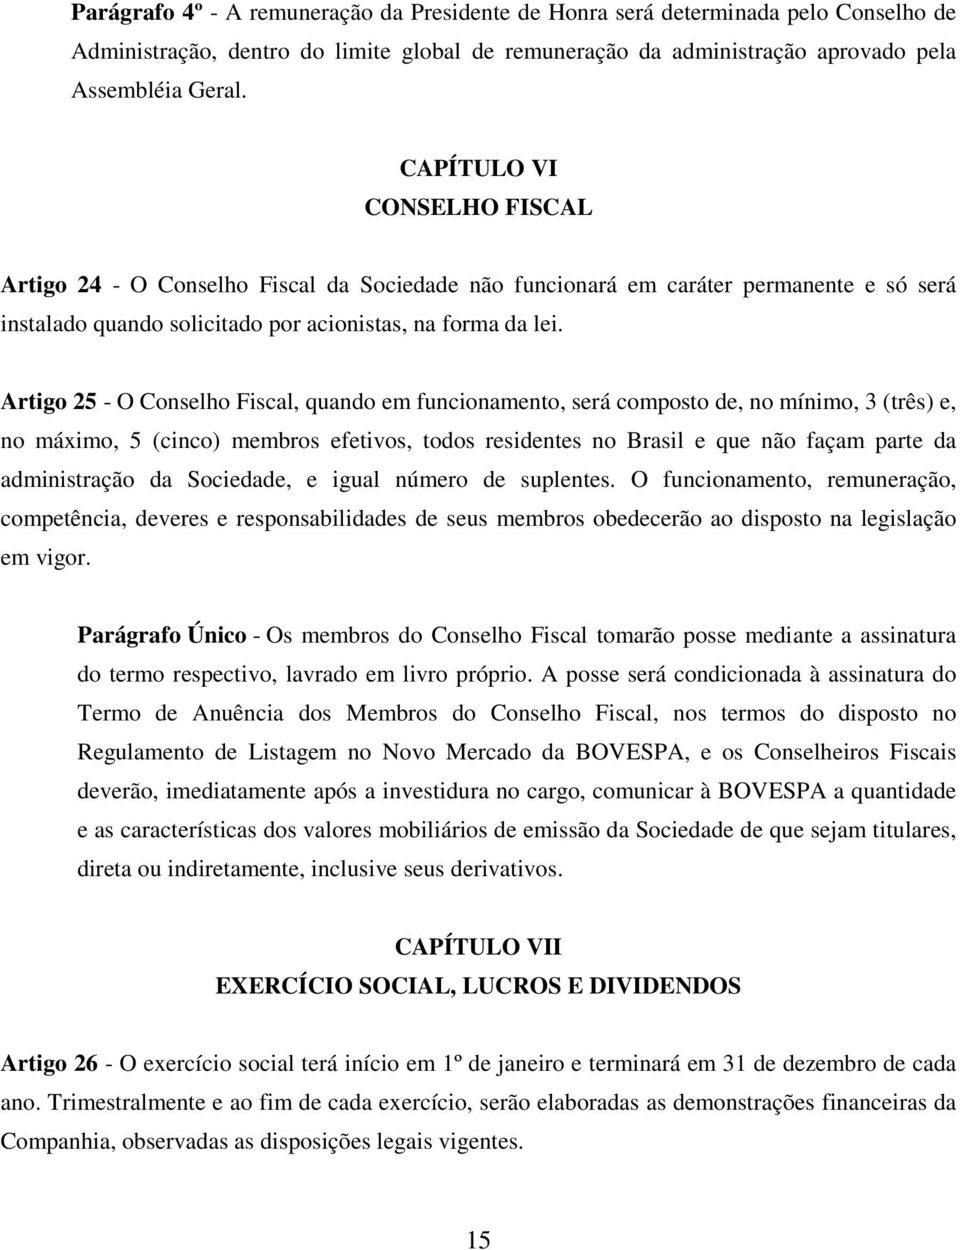 Artigo 25 - O Conselho Fiscal, quando em funcionamento, será composto de, no mínimo, 3 (três) e, no máximo, 5 (cinco) membros efetivos, todos residentes no Brasil e que não façam parte da